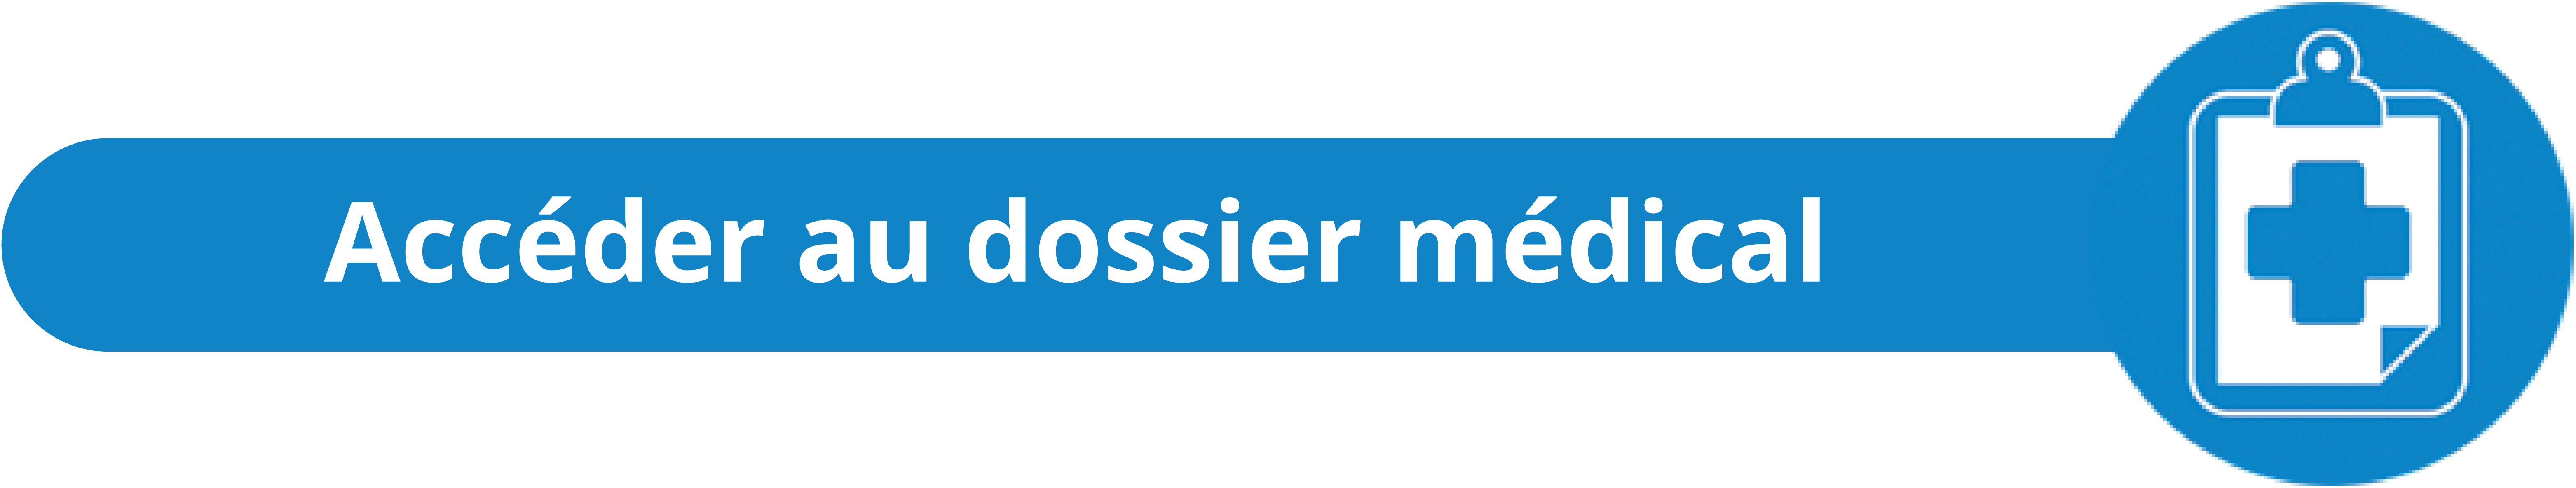 dossier-medical